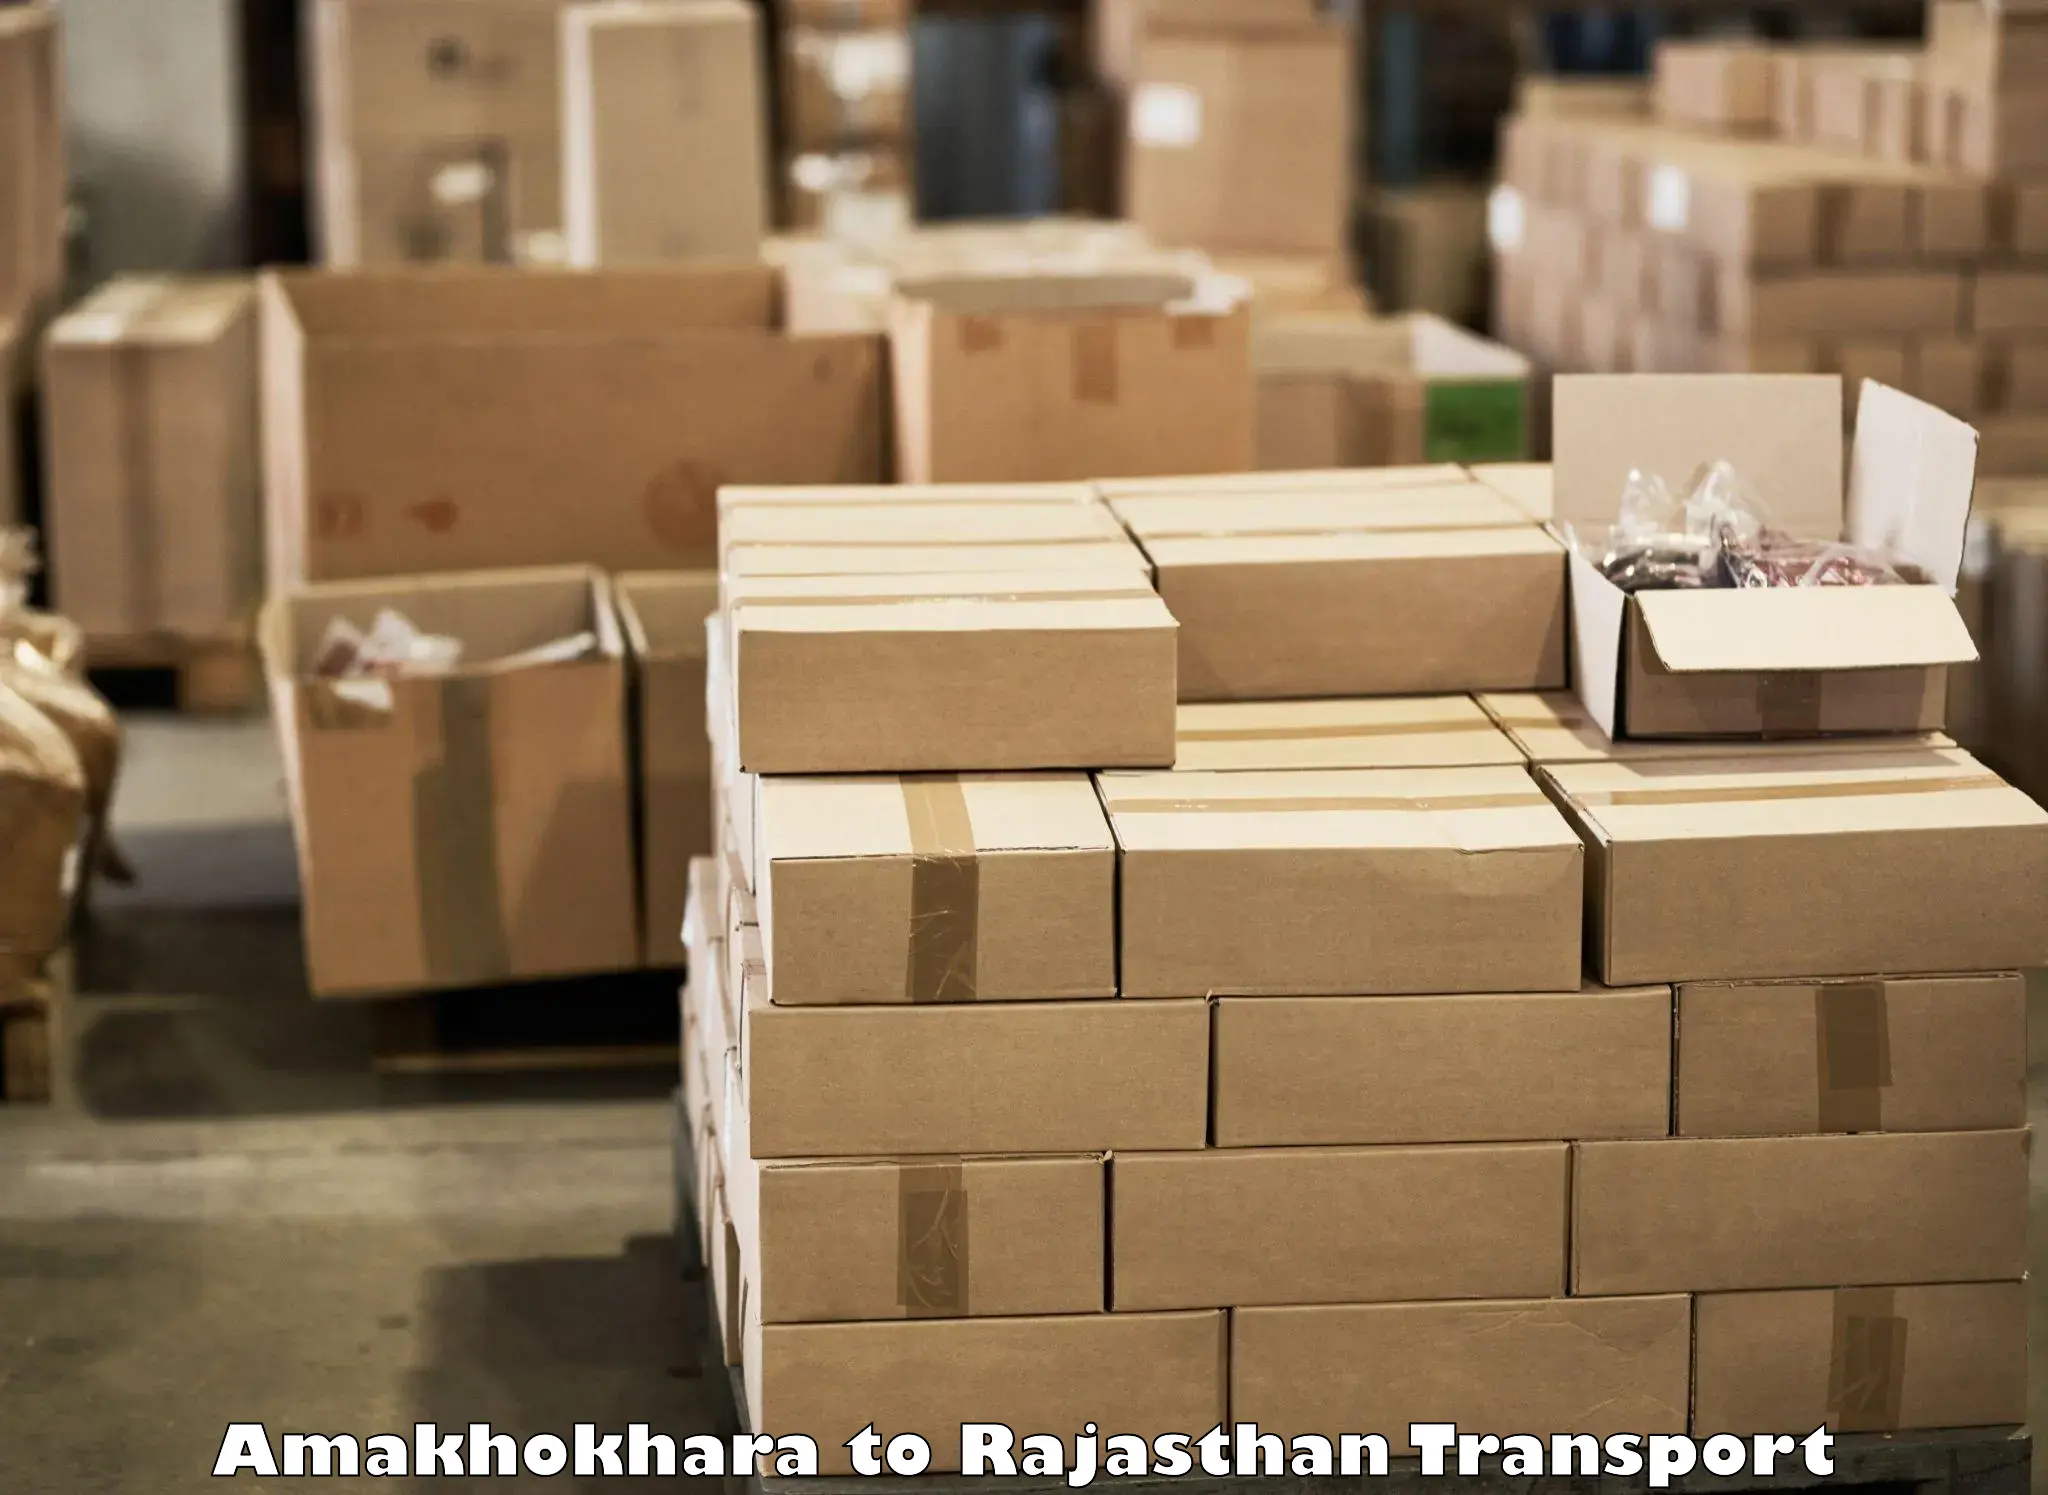 Interstate goods transport Amakhokhara to Rajgarh Rajasthan